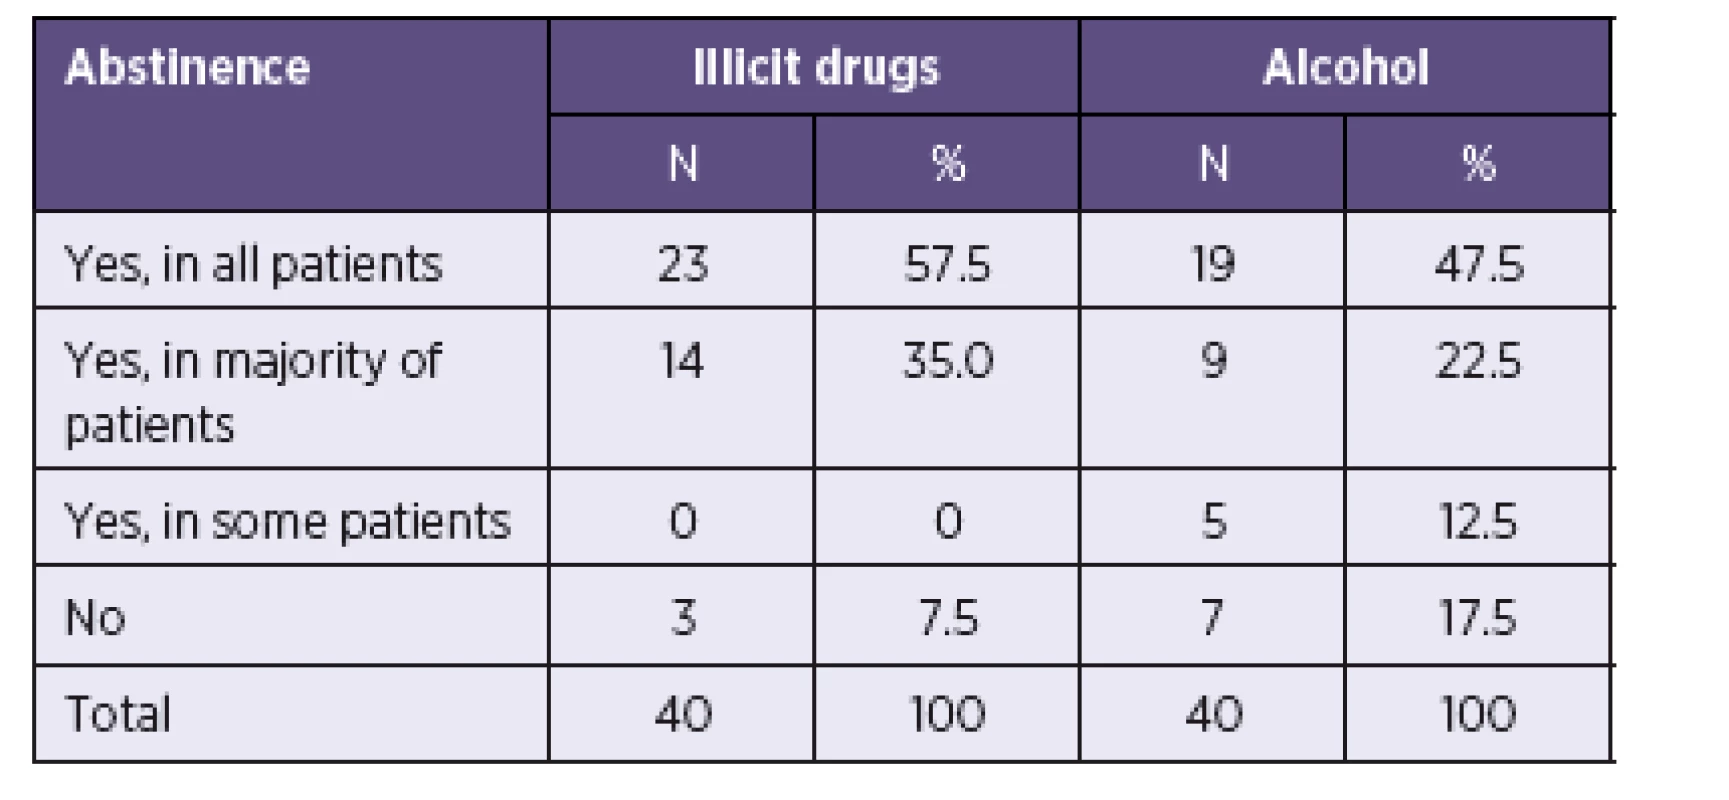 Abstinence from illicit drugs and alcohol as a precondition for HCV treatment
Tabulka 3. Abstinence od nelegálních drog a alkoholu jako podmínka zahájení léčby VHC